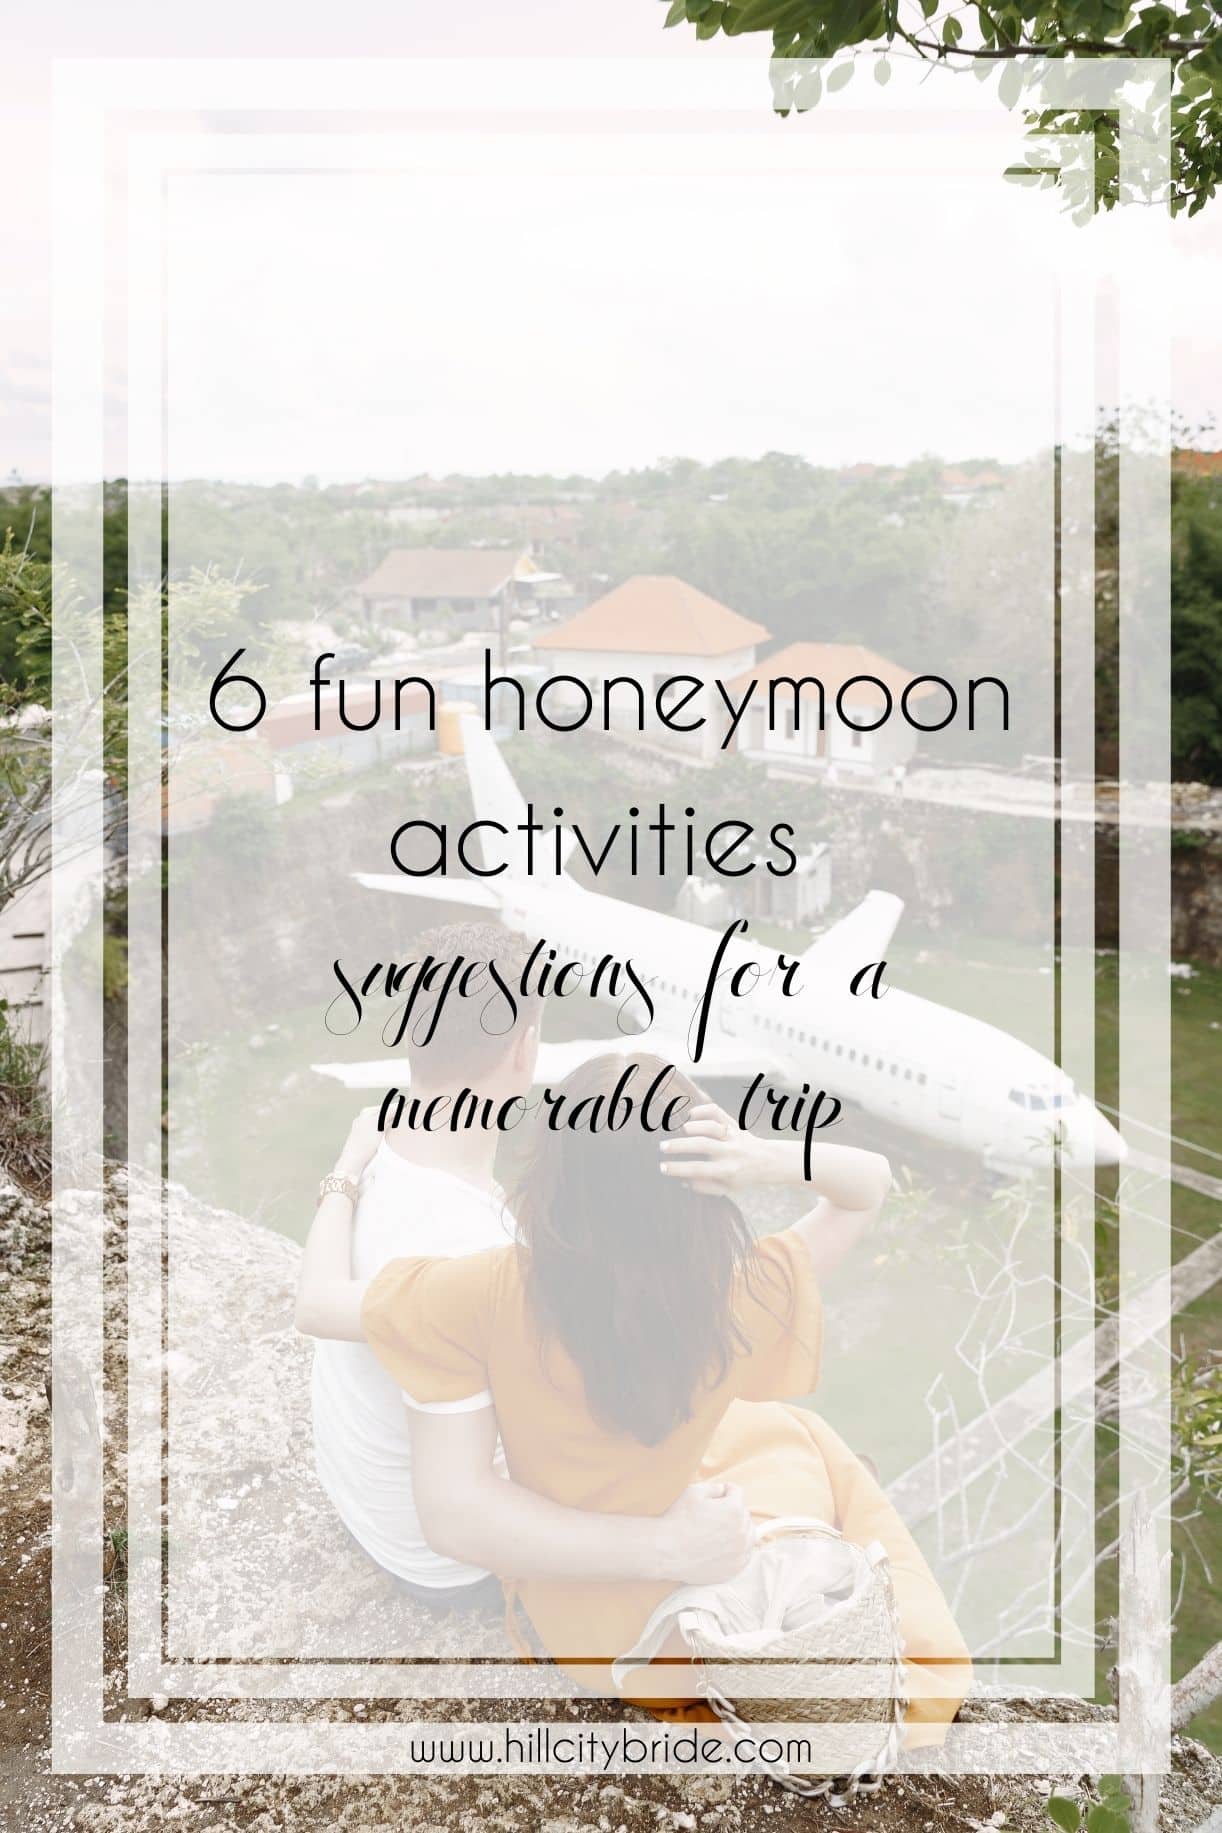 Fun Honeymoon Activities for Couples